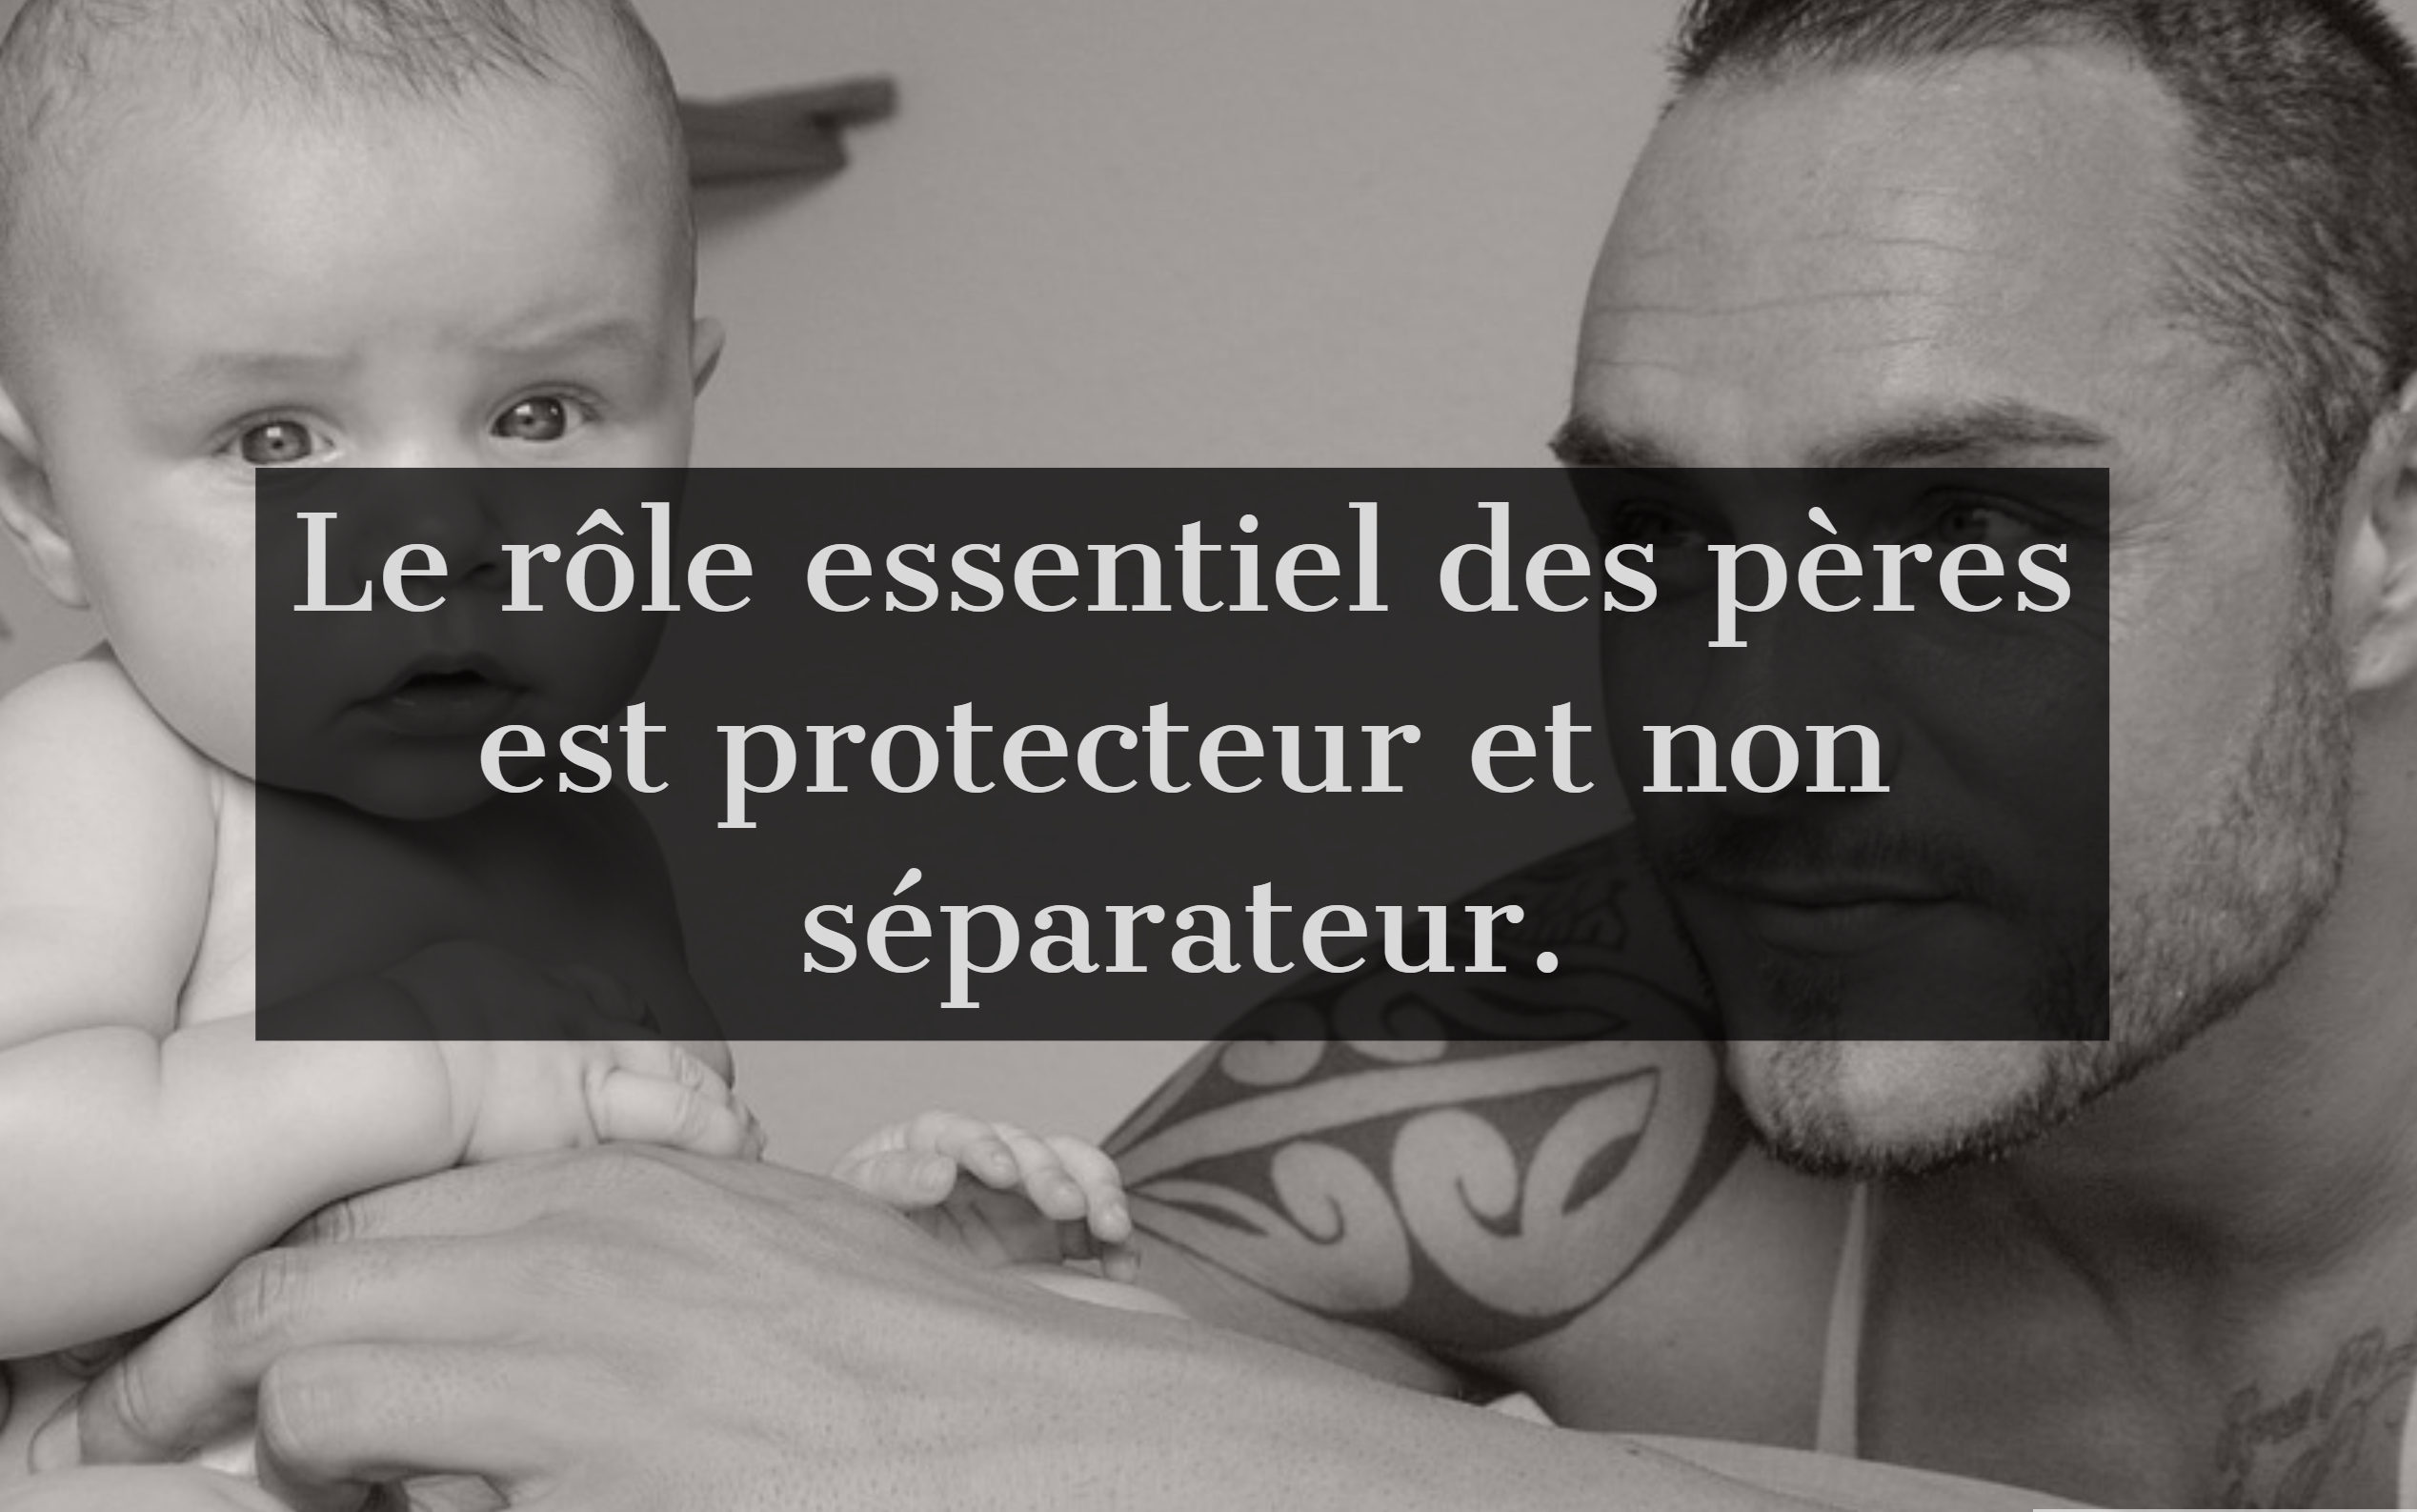 Le rôle essentiel des pères est protecteur et non séparateur.